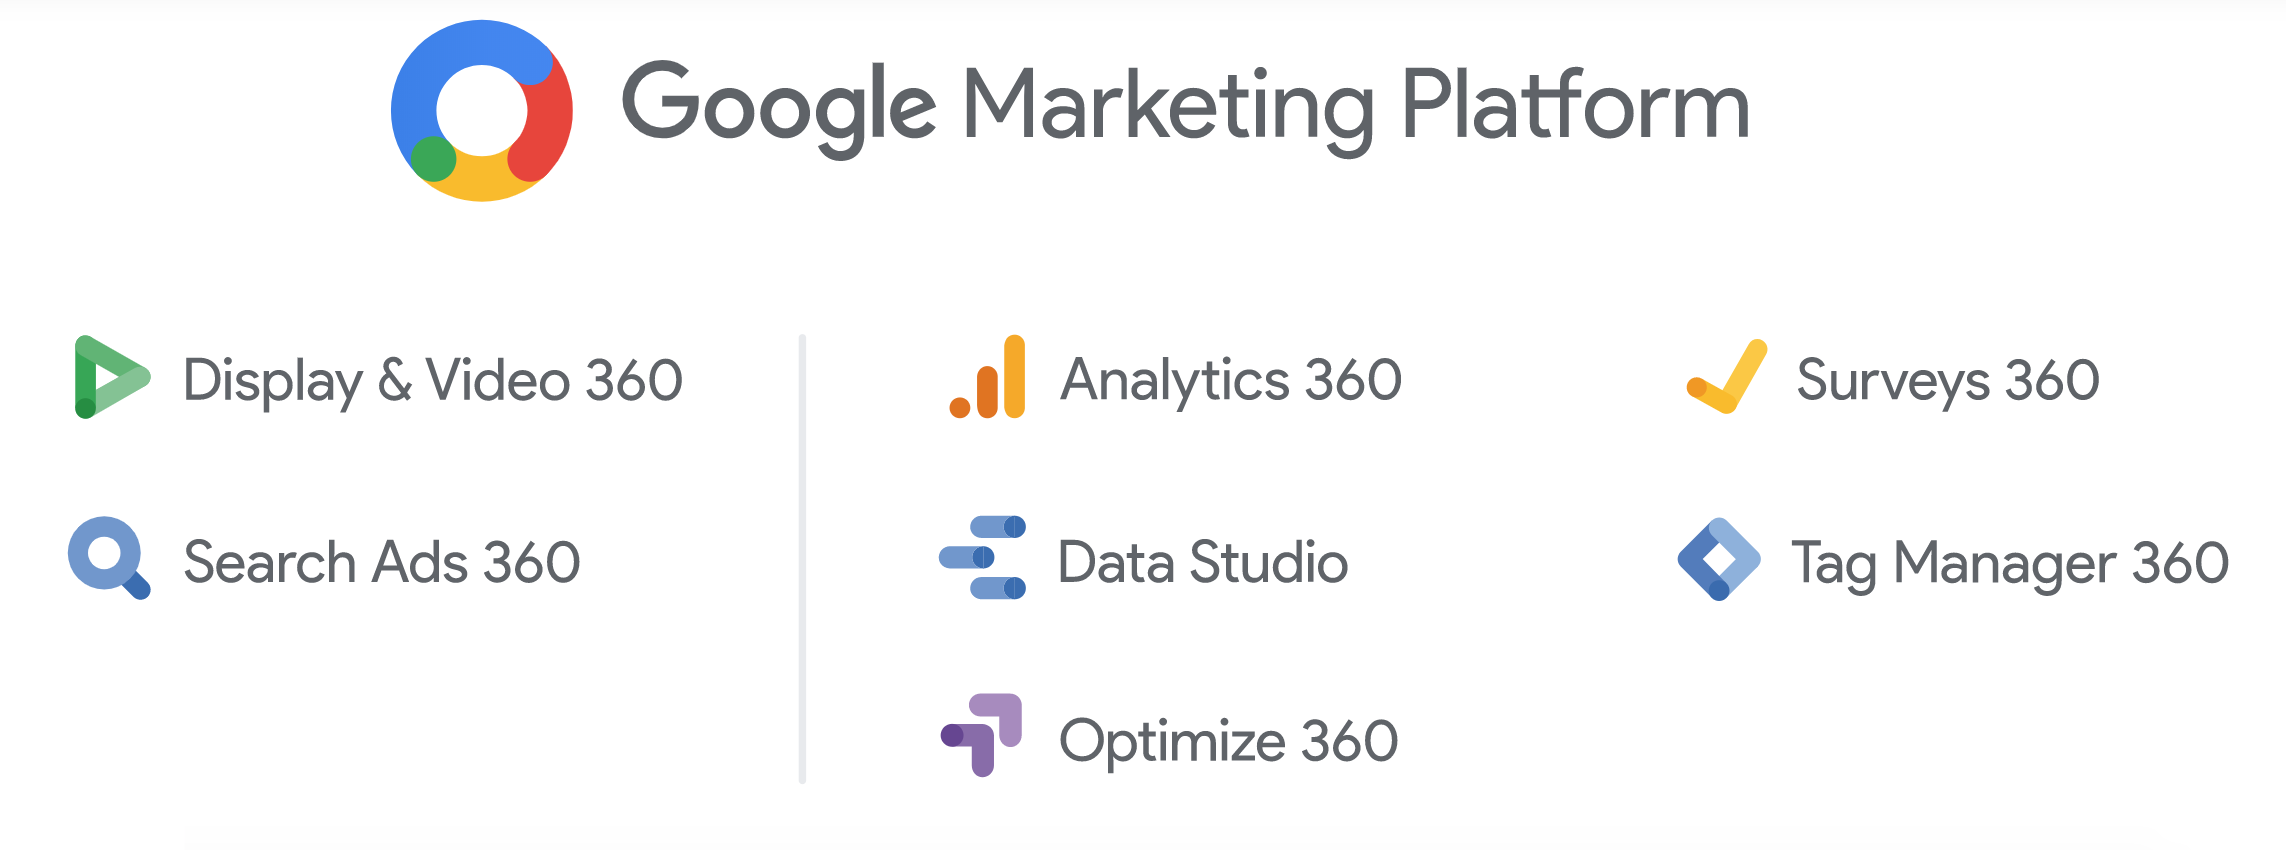 Das Bild zeigt die neuen Features der Google Marketing Platform, © Google:
- Display & Video 360
- Search Ads 360
- Analytics 360
- Data Studio
- Optimize 360
- Surveys 360
- Tag Manager 360